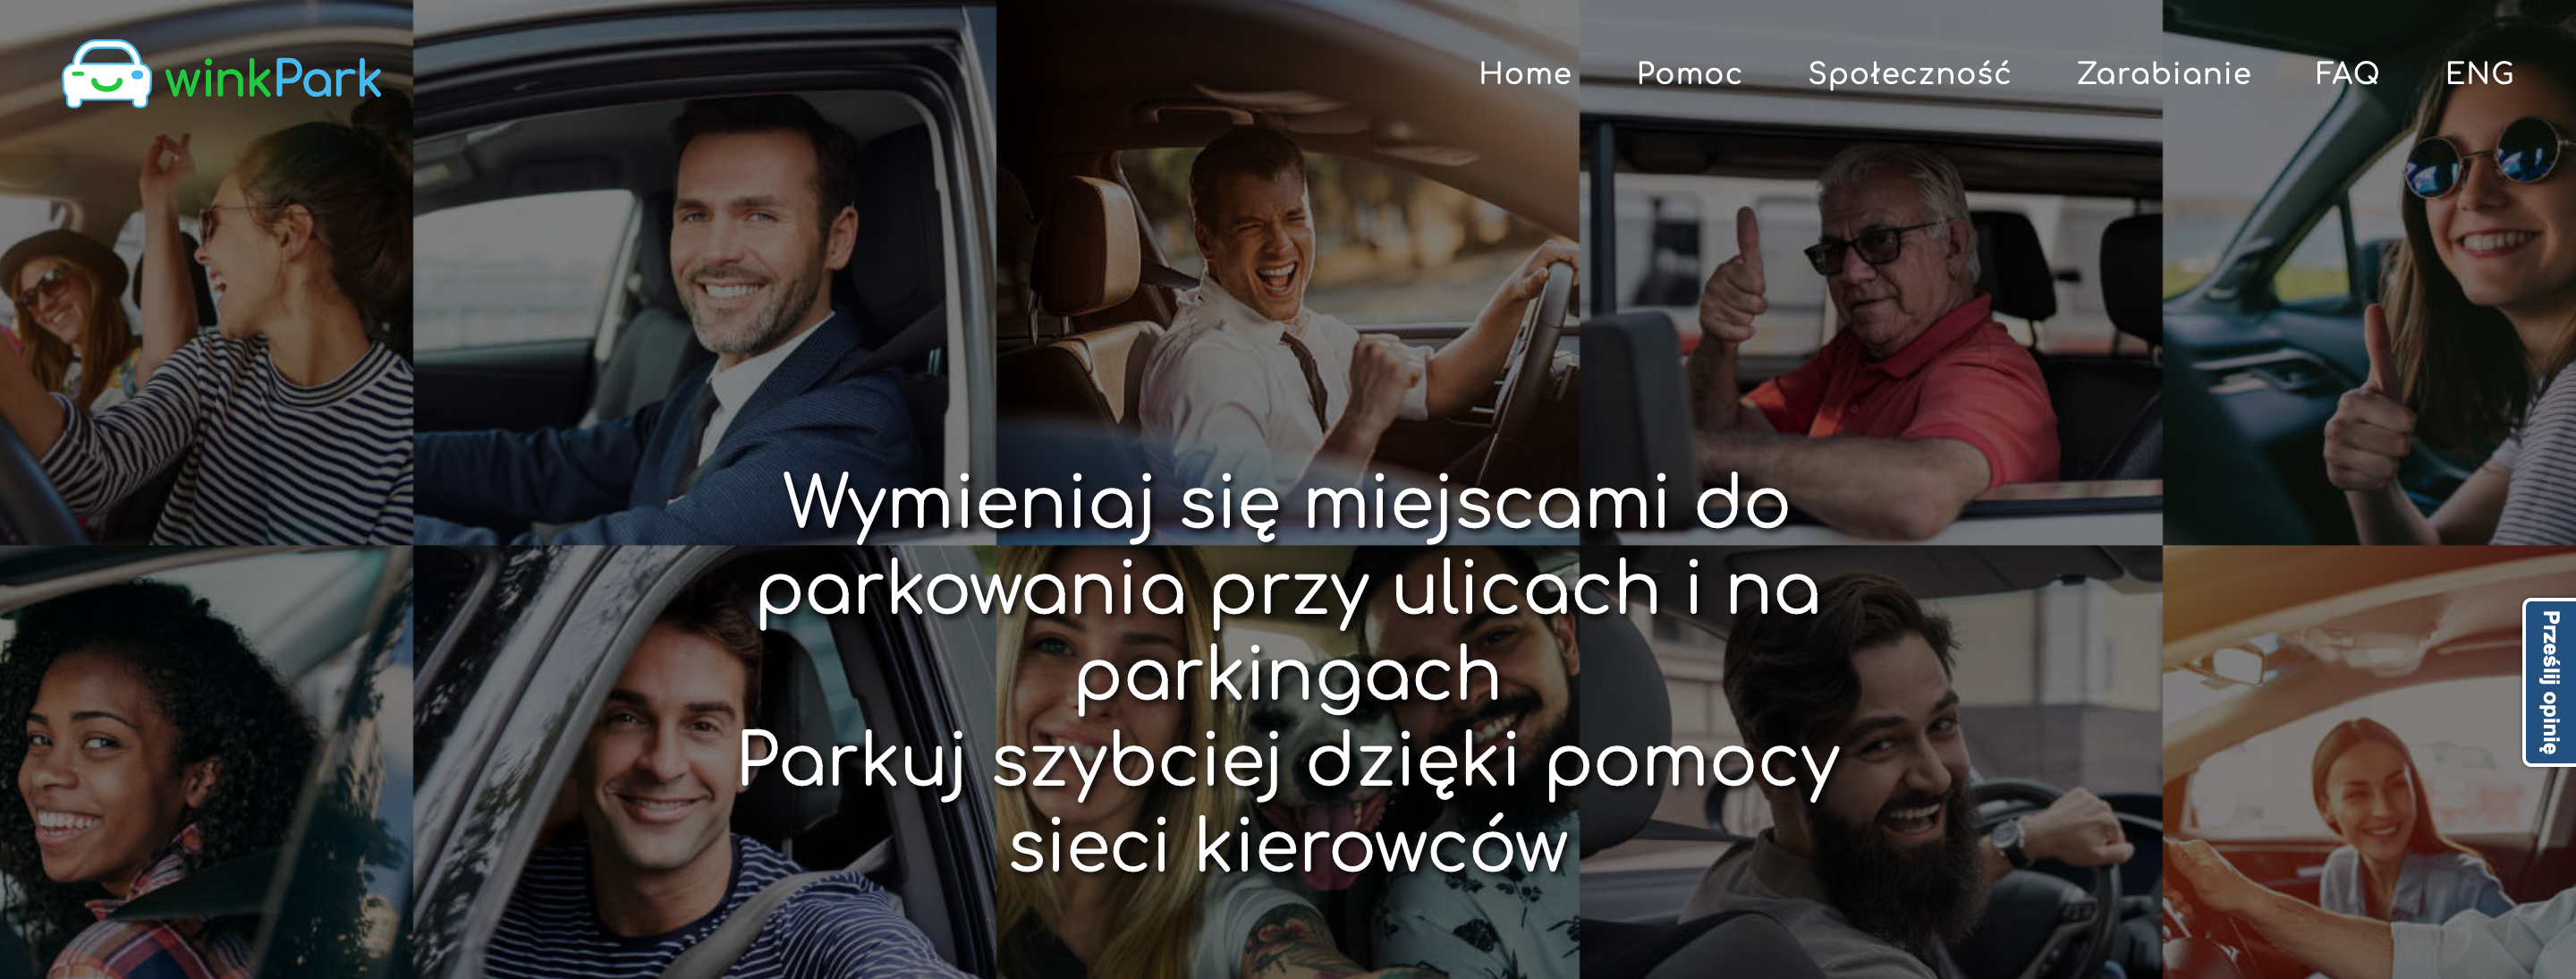 Polska aplikacja rozwiąże problem parkowania w miastach na całym świecie Android mediarun polska aplikacja parking 2019